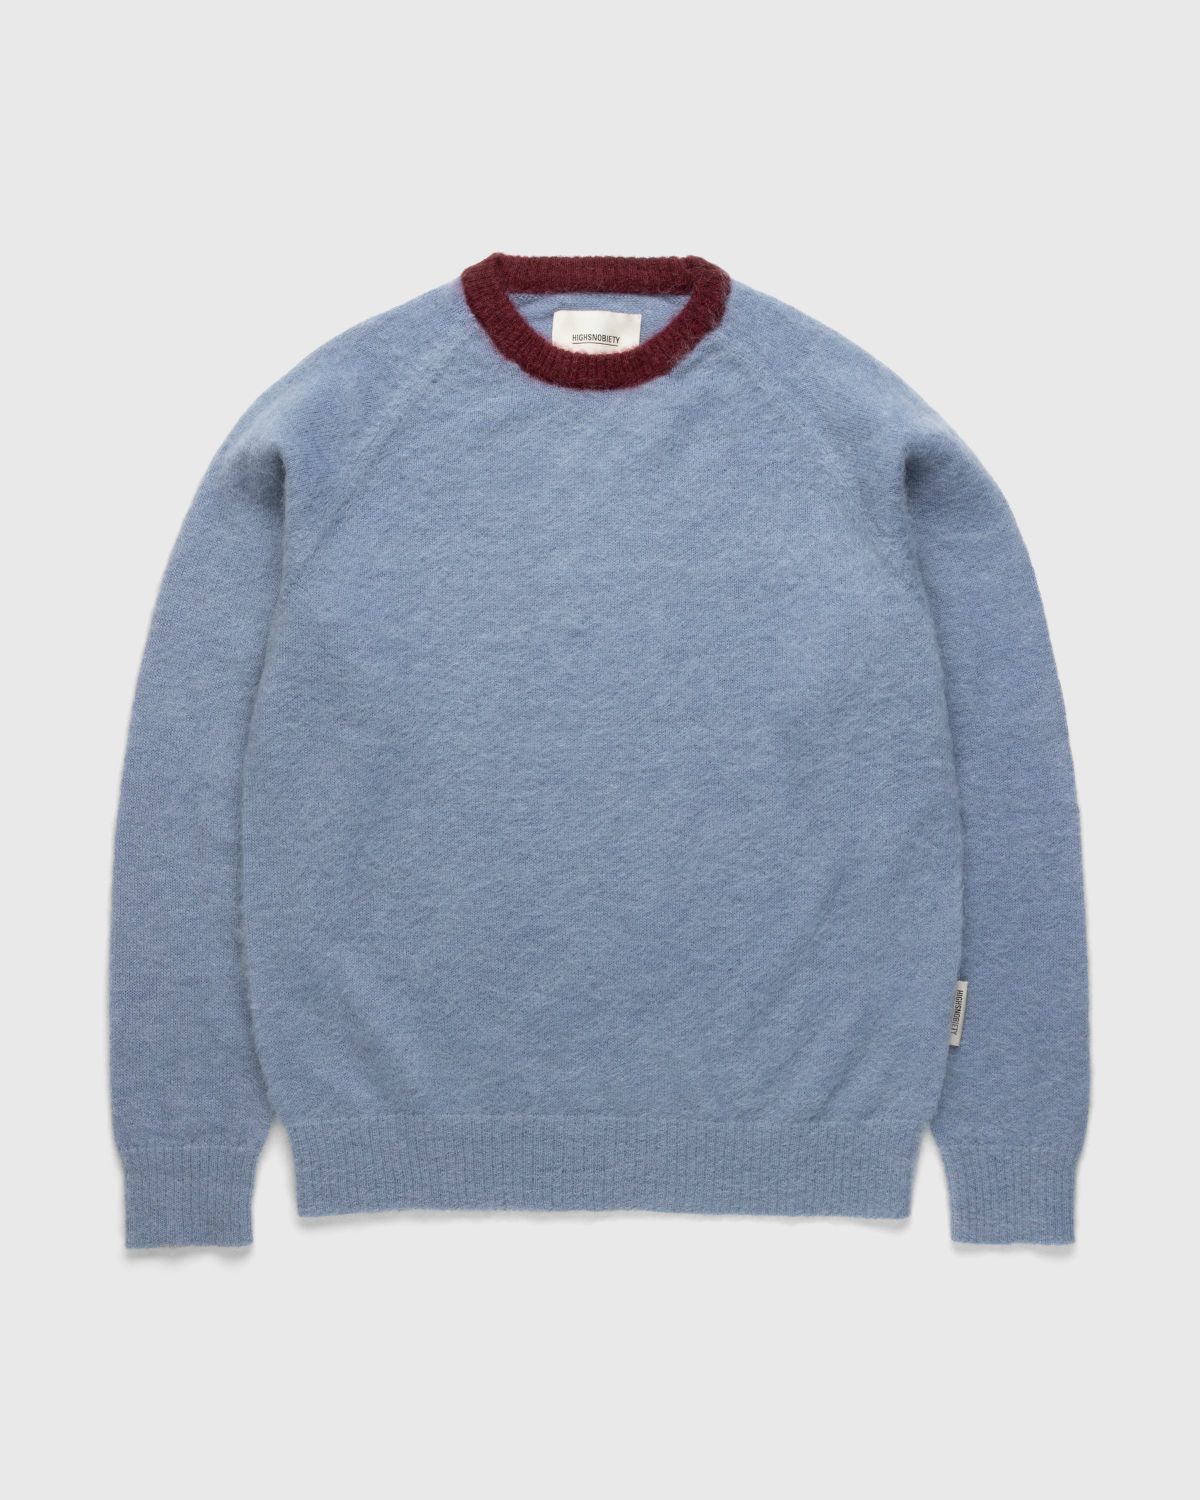 Sweater Blue – Baby Highsnobiety Alpaca | Highsnobiety Shop